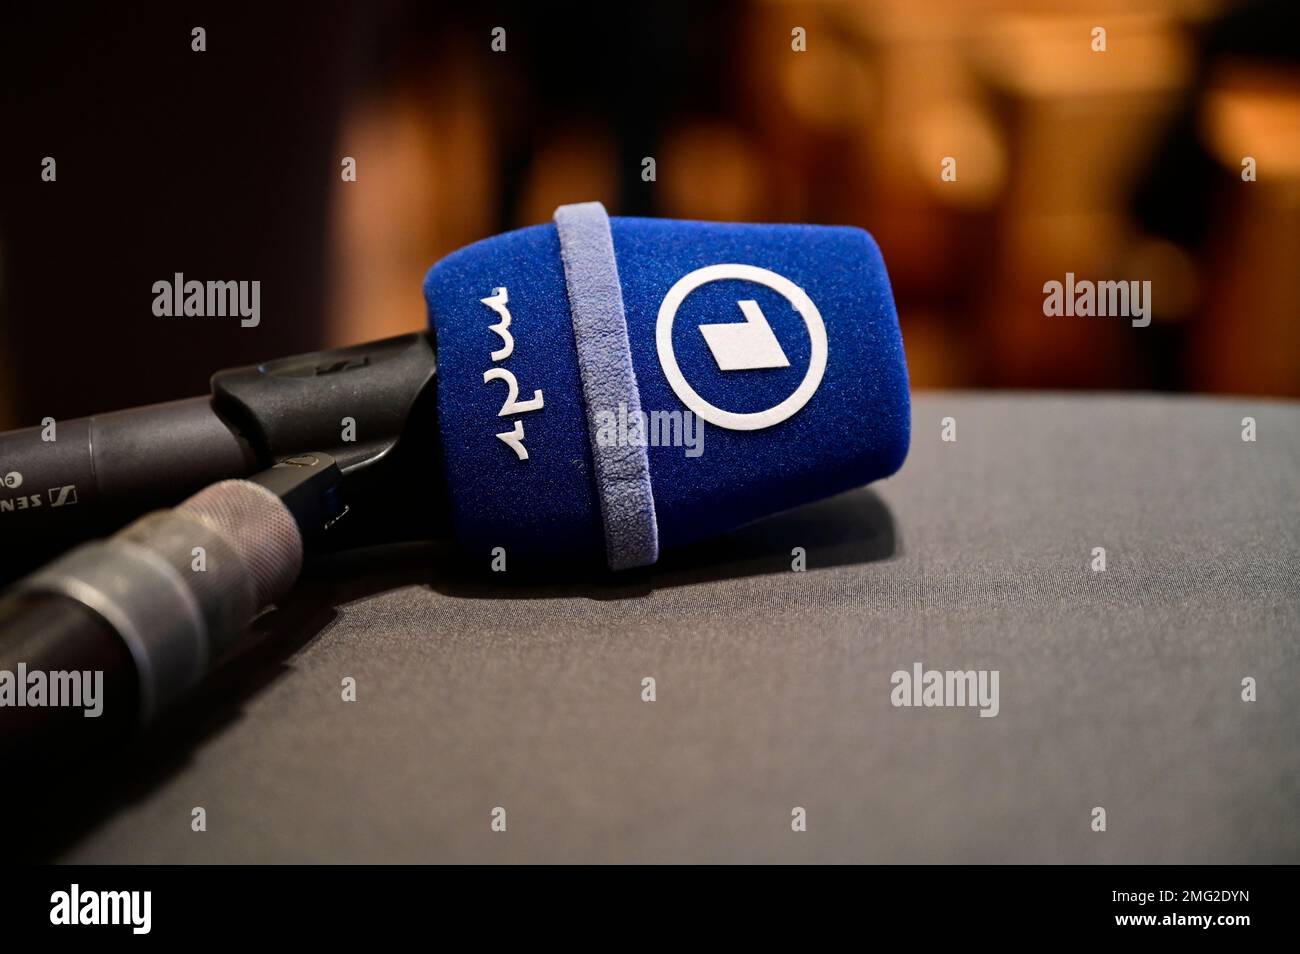 Themenbild, Symbolfoto, die öffentlich-rechtlichen Sender, wie ARD, ZDF, MDR, Deutschlandradio, Das Erste, Abo, ARD Brennpunkt, ARD-App, ARD-Logo, ARD Foto Stock